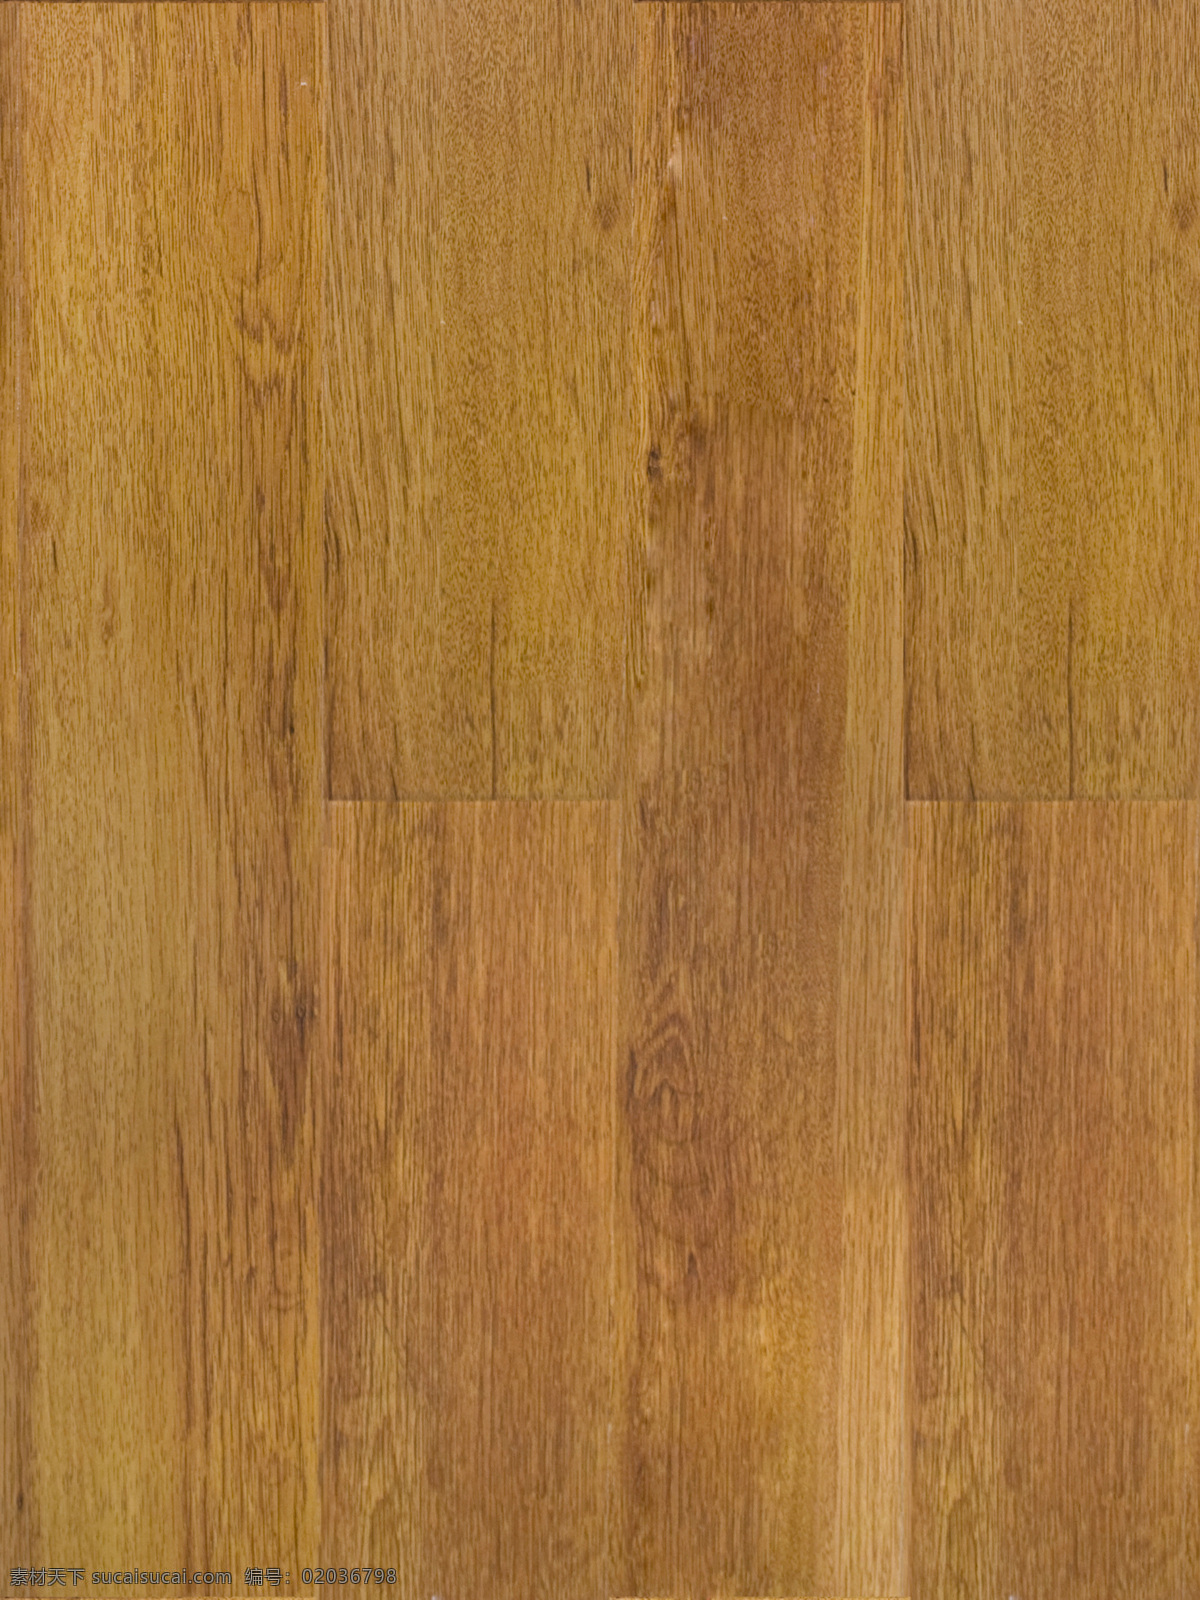 现代 简约 地板 高清 木纹 图 纹理 实木 木地板 实木地板 3d渲染 老木 旧木 古木 木质地板 地板纹理 原木木纹 木纹理图片 木纹理背景 木纹理贴图